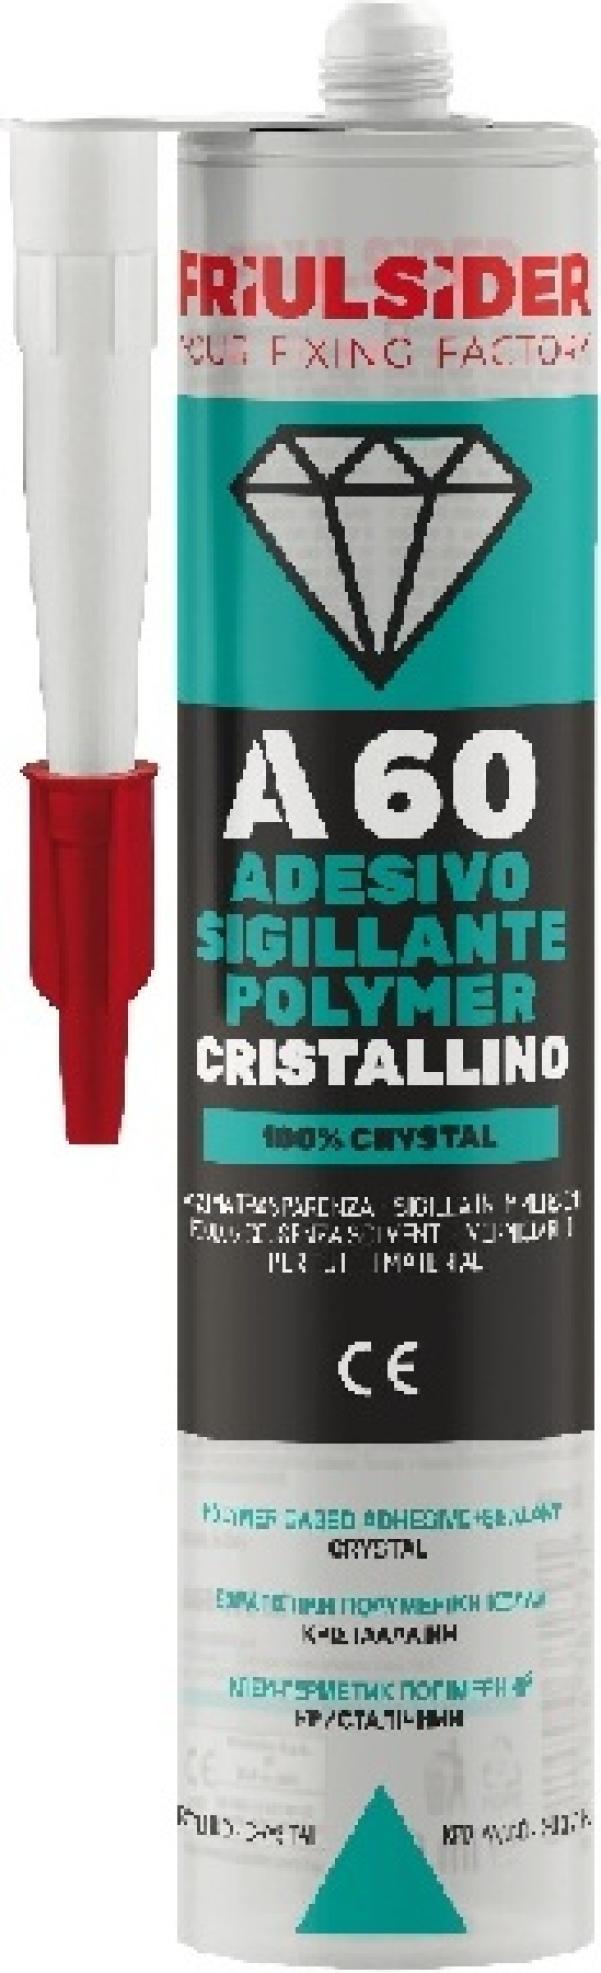 Adesivo Sigillante CRISTALLINO polimeri trasparente 290ml Friulsider A6010